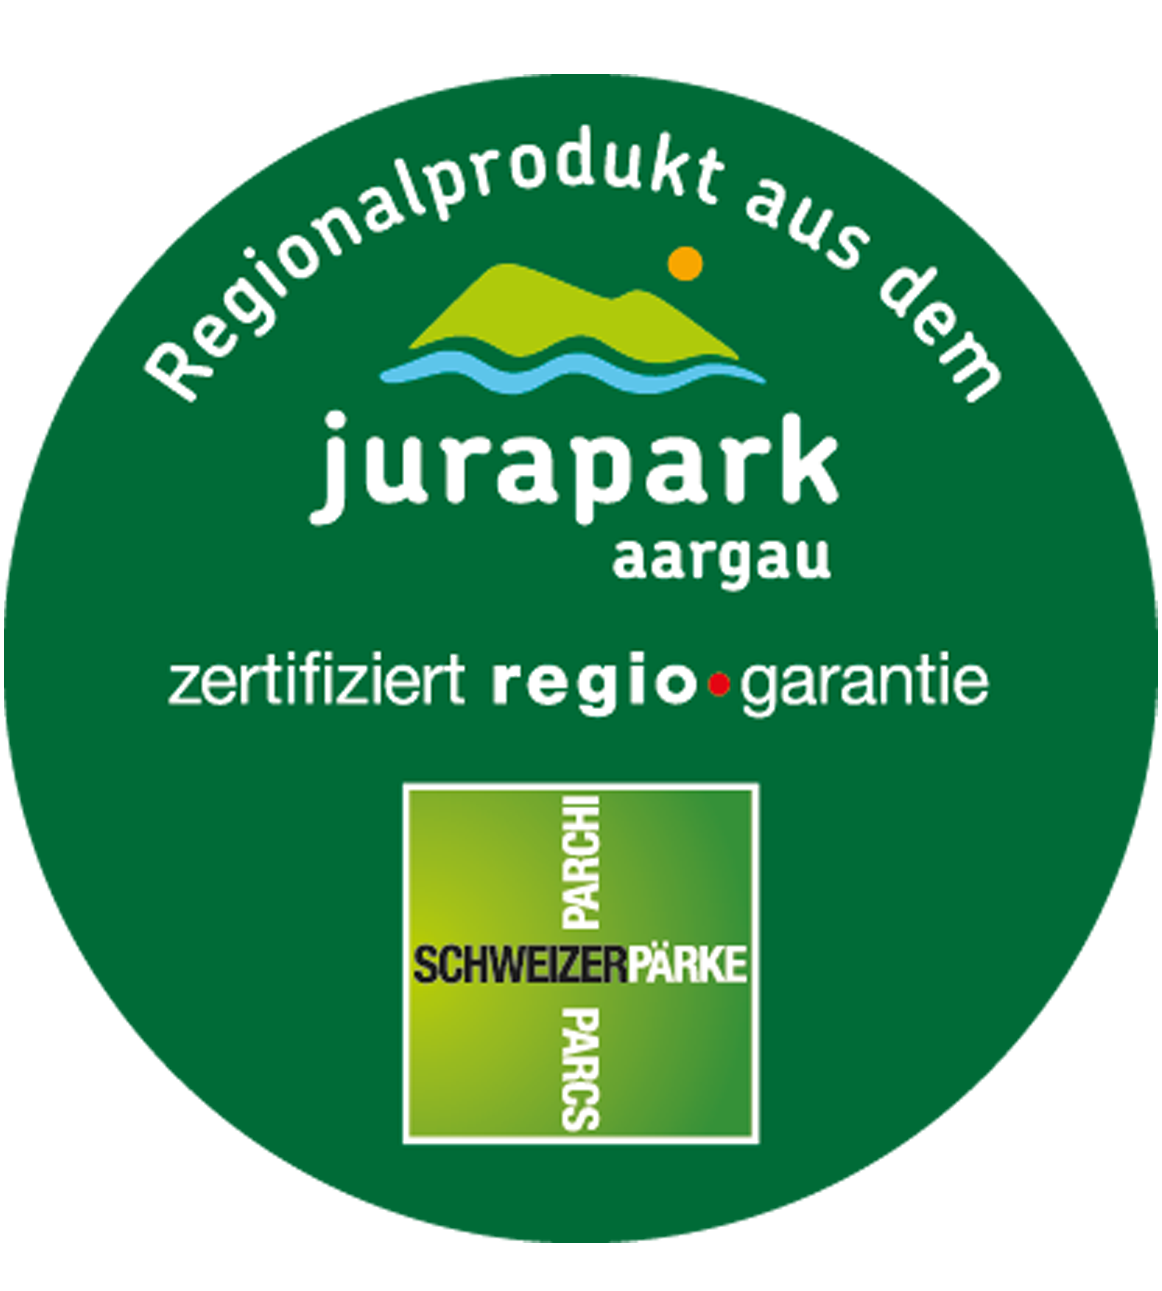 Unsere Fische sind jetzt als Regionales Produkt zertifiziert _Logo Jurapark Aargau